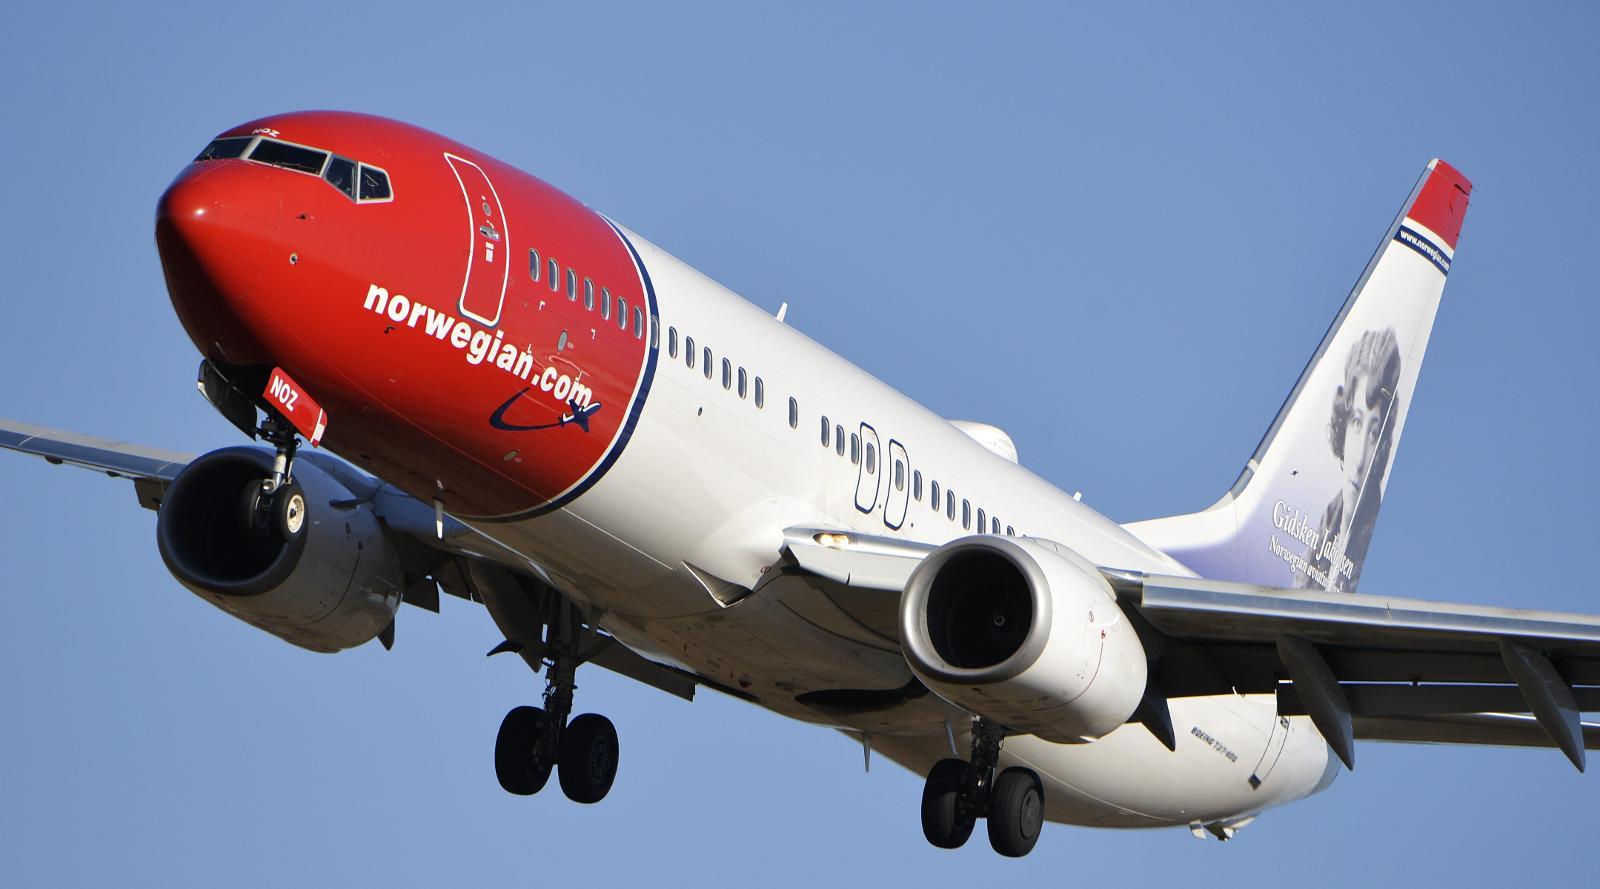 NEKTET FLYTILLATELSE: Norwegian får ikke ny midlertidig flytillatelse i USA av det amerikanske samferdselsdepartementet.